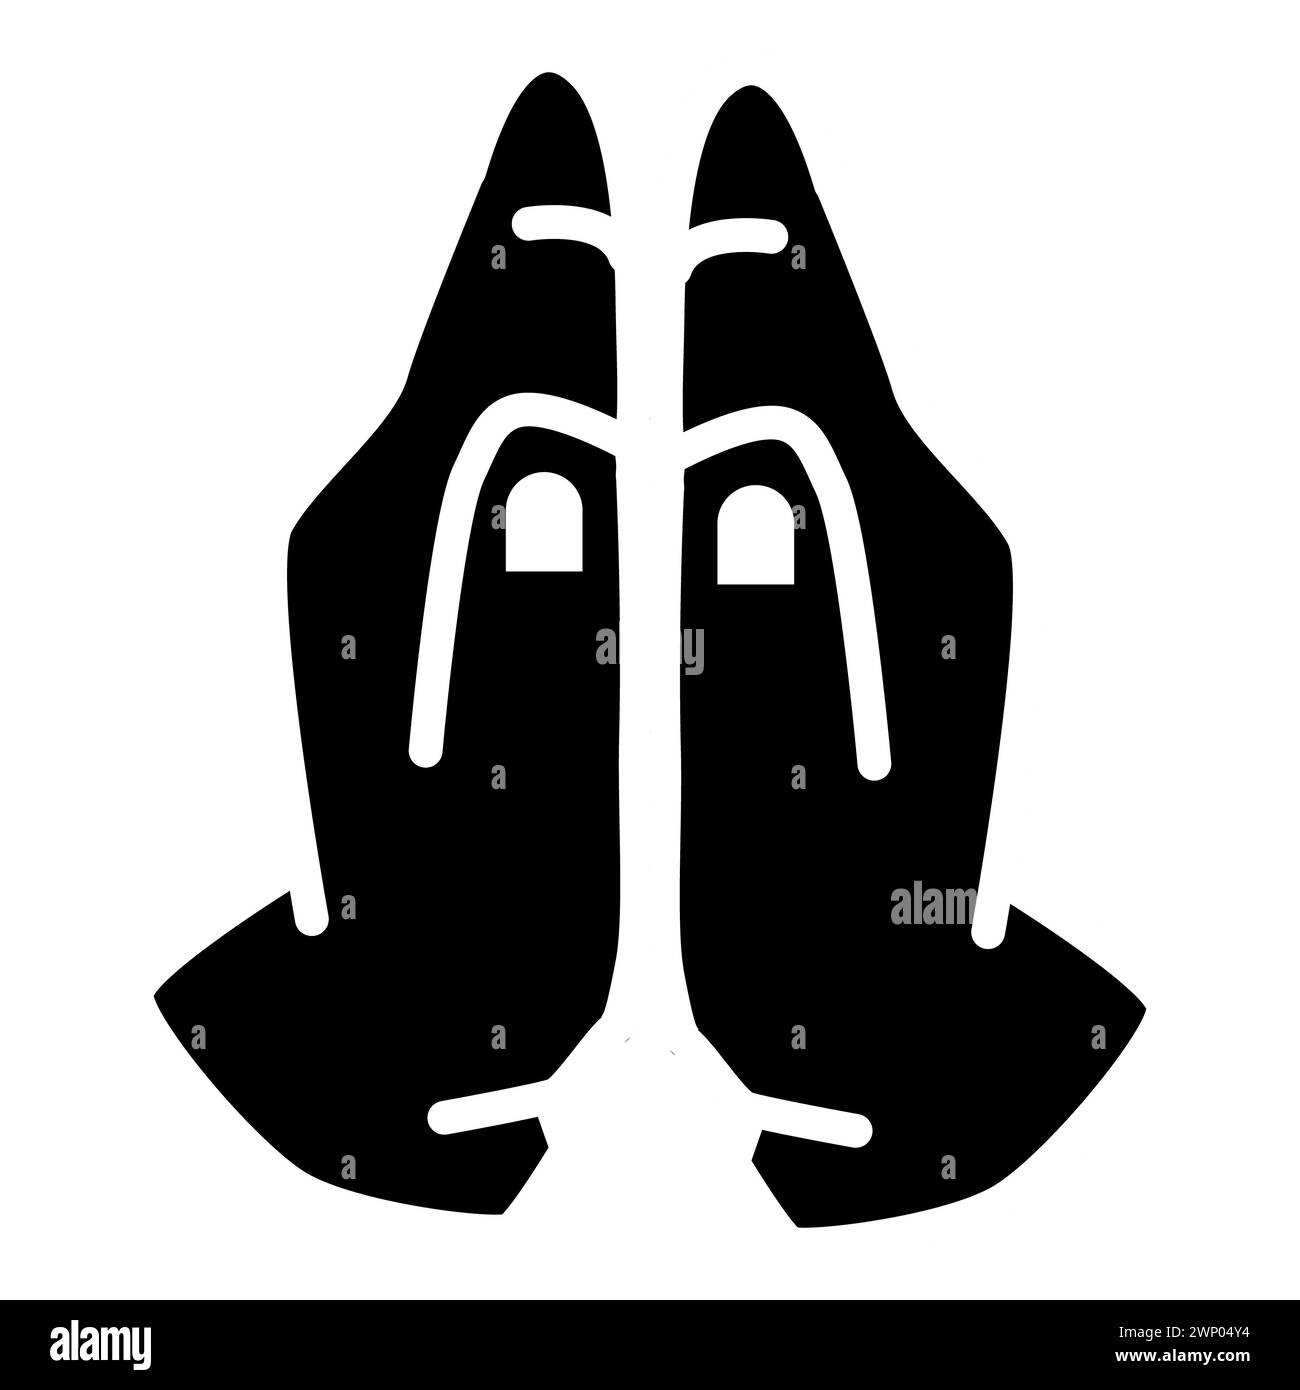 Icona mani di preghiera. Mani piegate nel segno di preghiera. Immagine in bianco e nero del simbolo delle mani di preghiera. stile piatto. Foto Stock